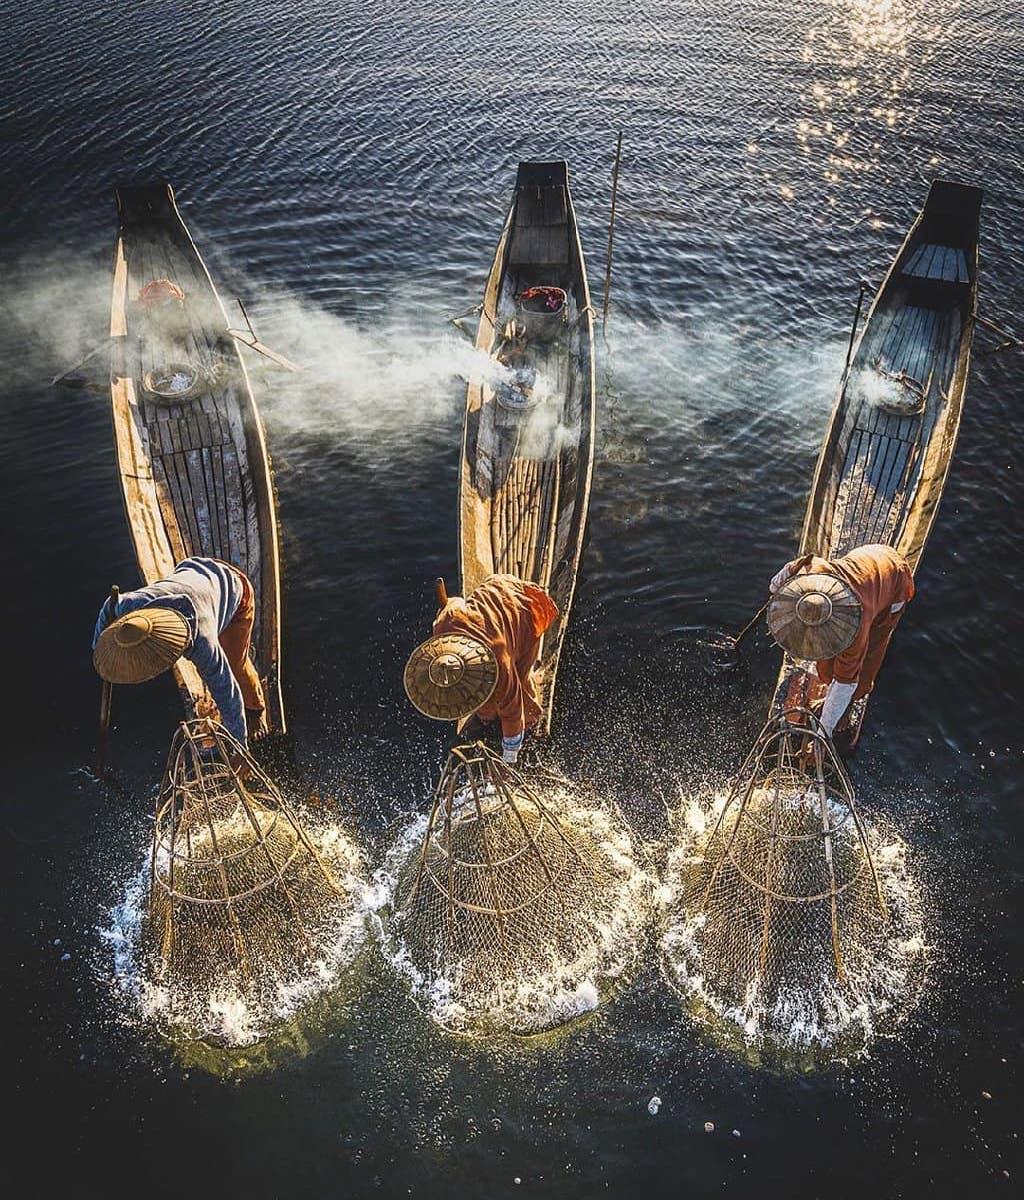  缅甸莱茵湖上的渔民，来自摄影师KenKen。 